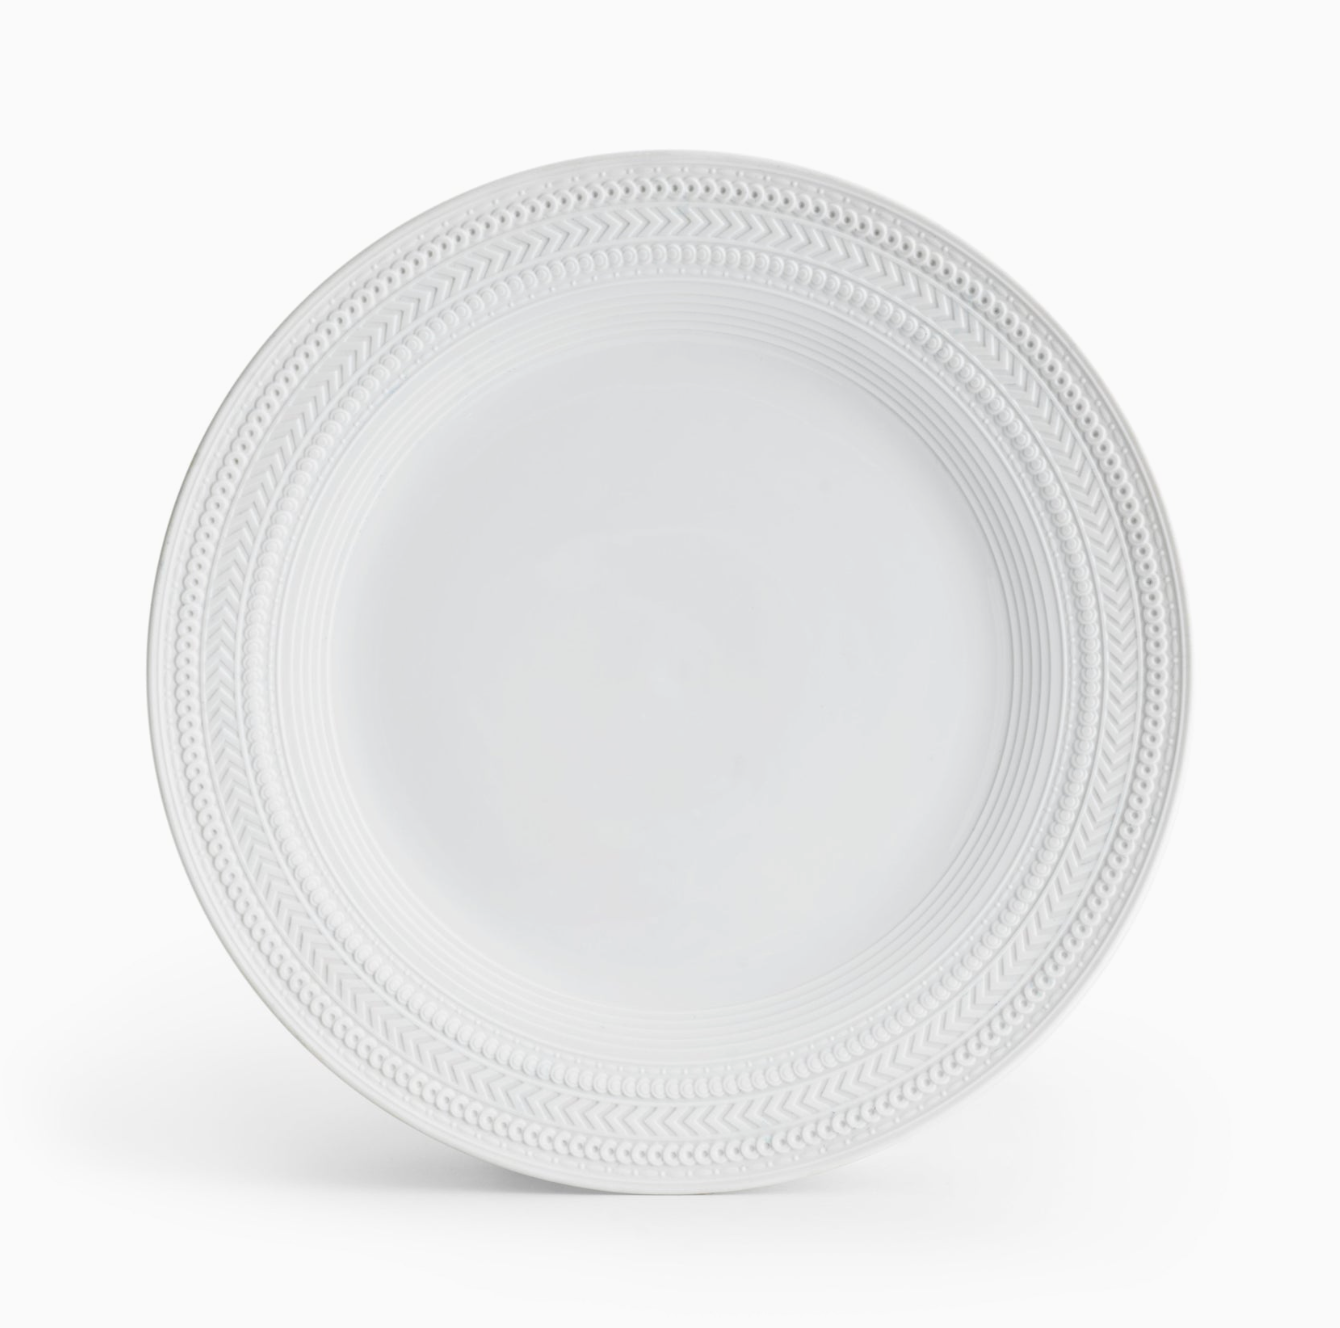 Palace Dinnerware - Dinner Plate